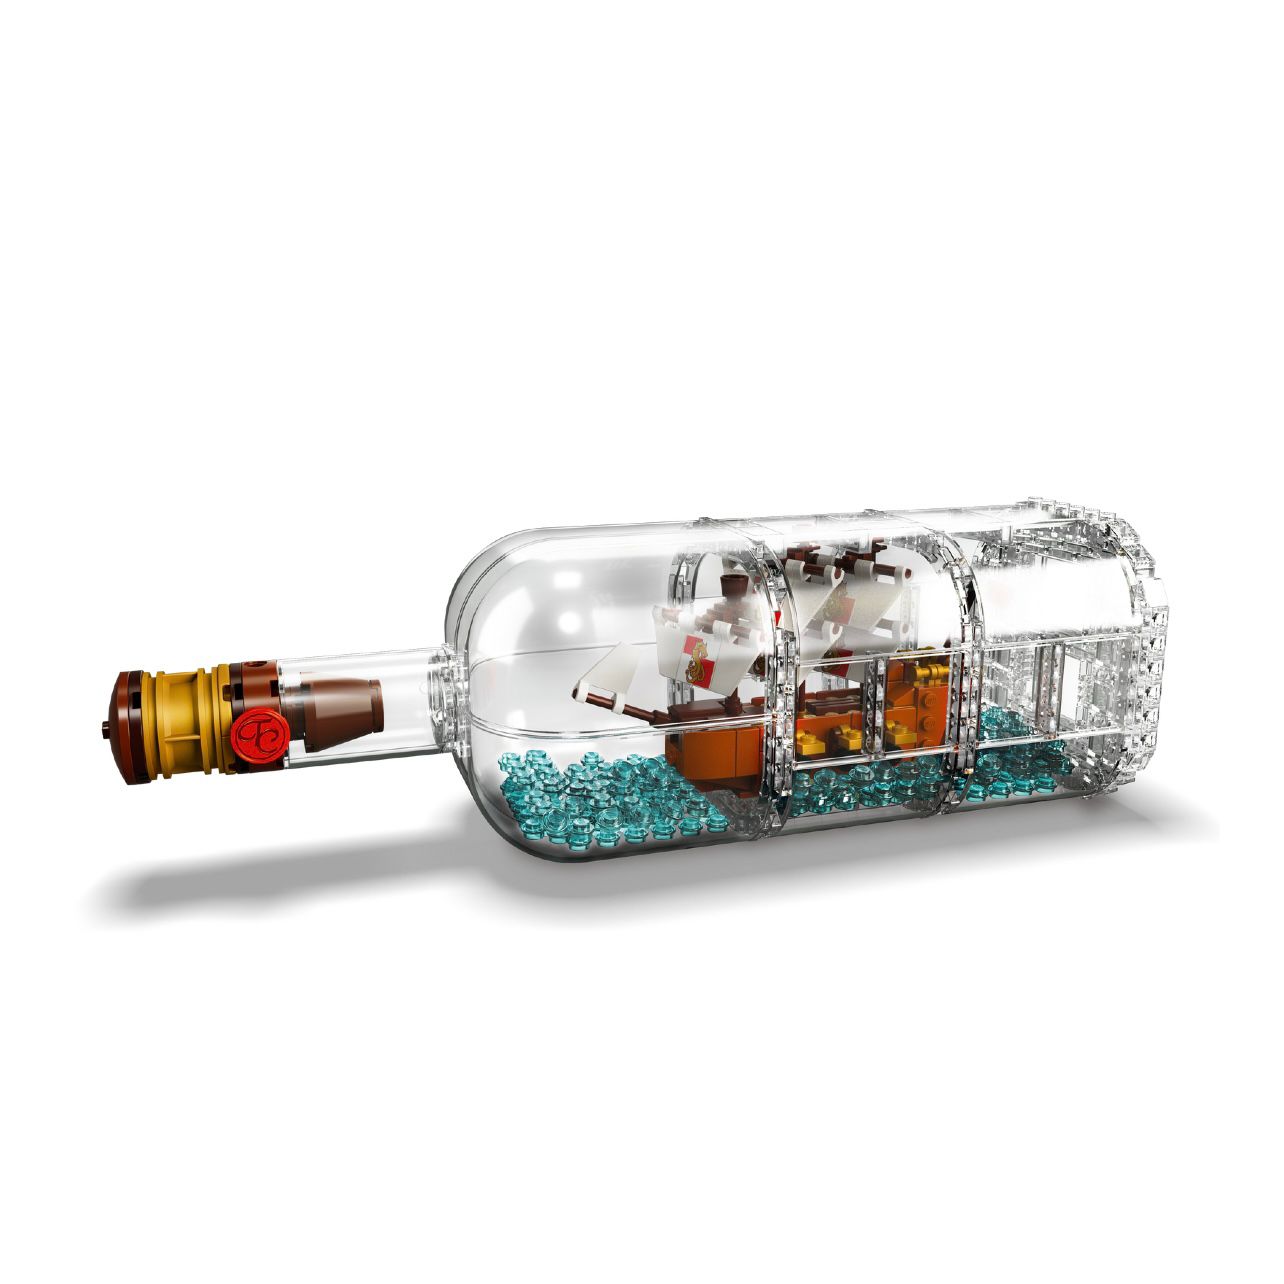 لگو مدل کشتی درون یک بطری سری ایده کد 92177